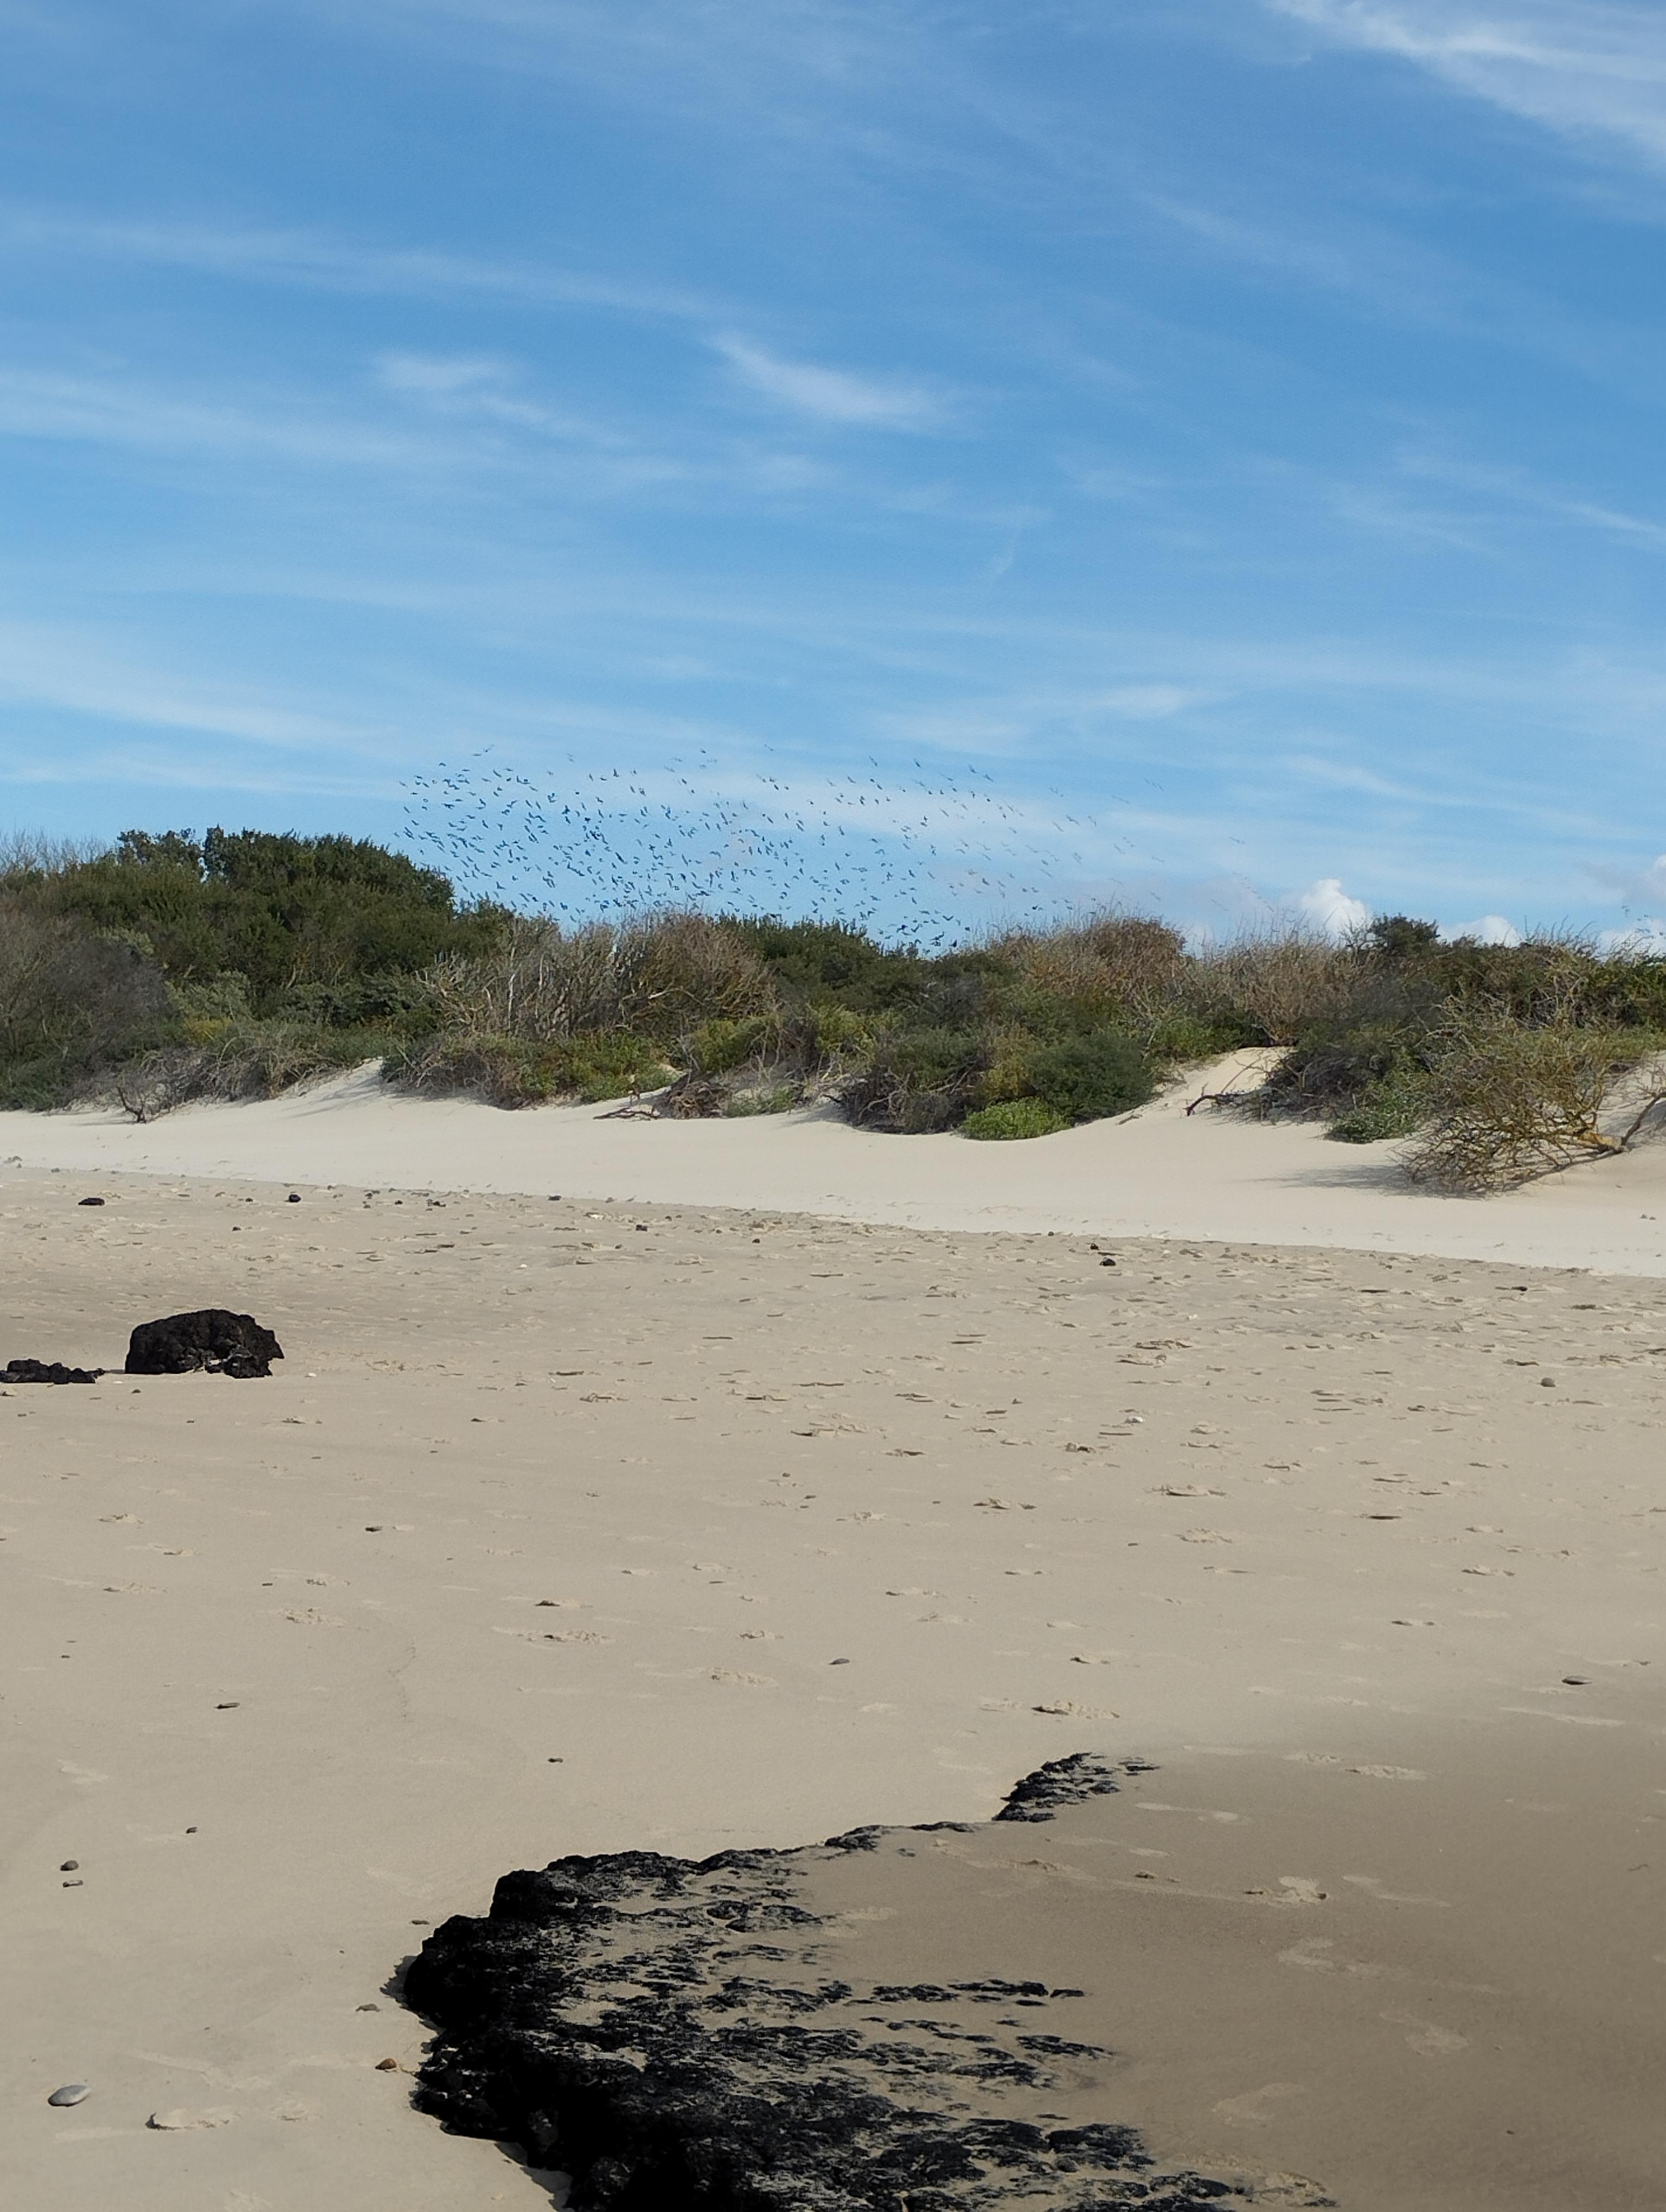 Vol d'étourneaux dans les dunes